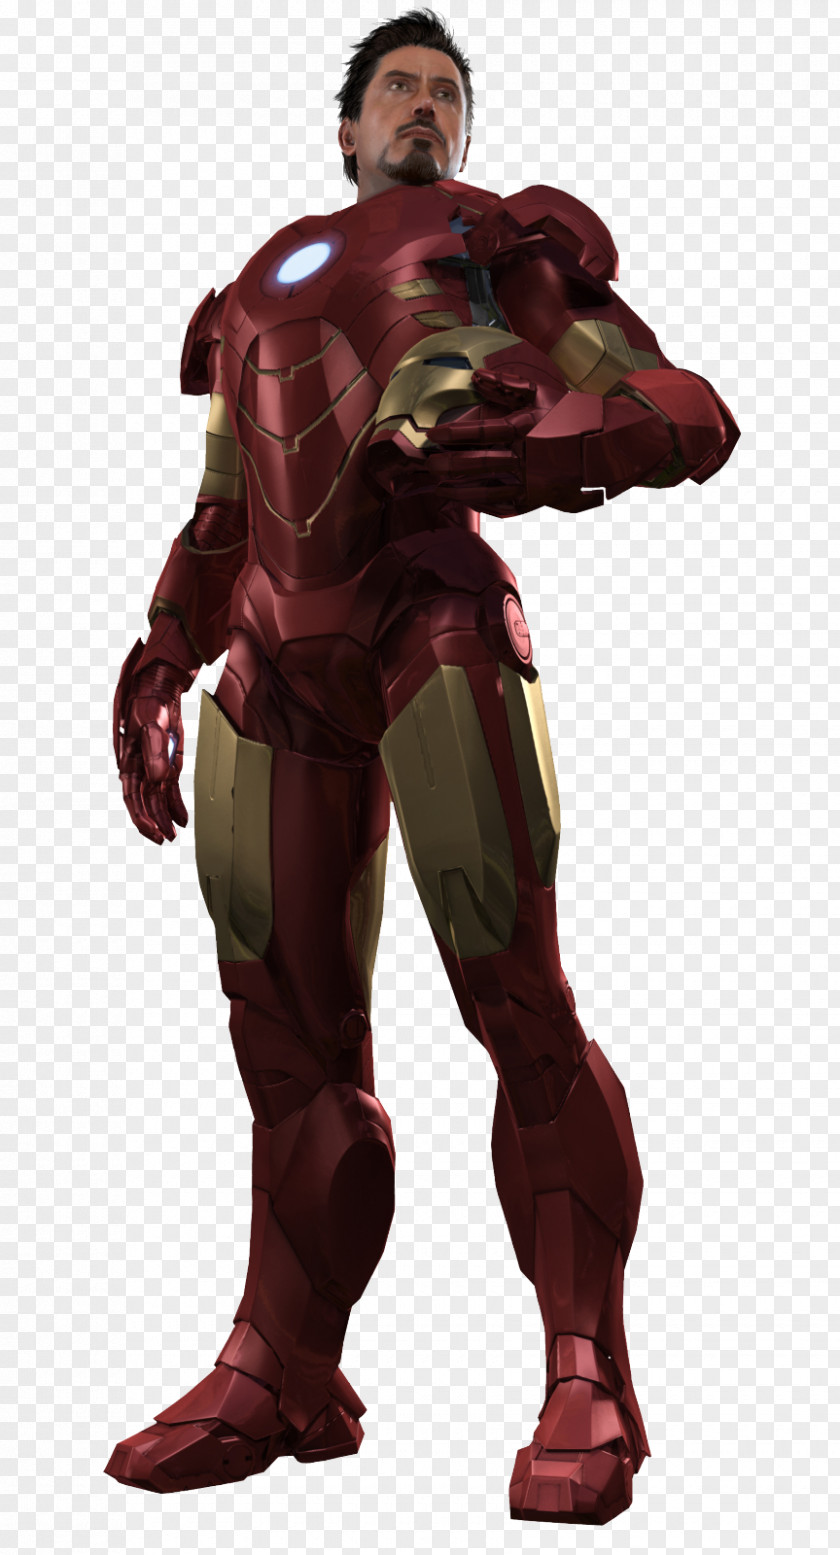 Ironman Iron Man 2 War Machine Man's Armor Video Game PNG